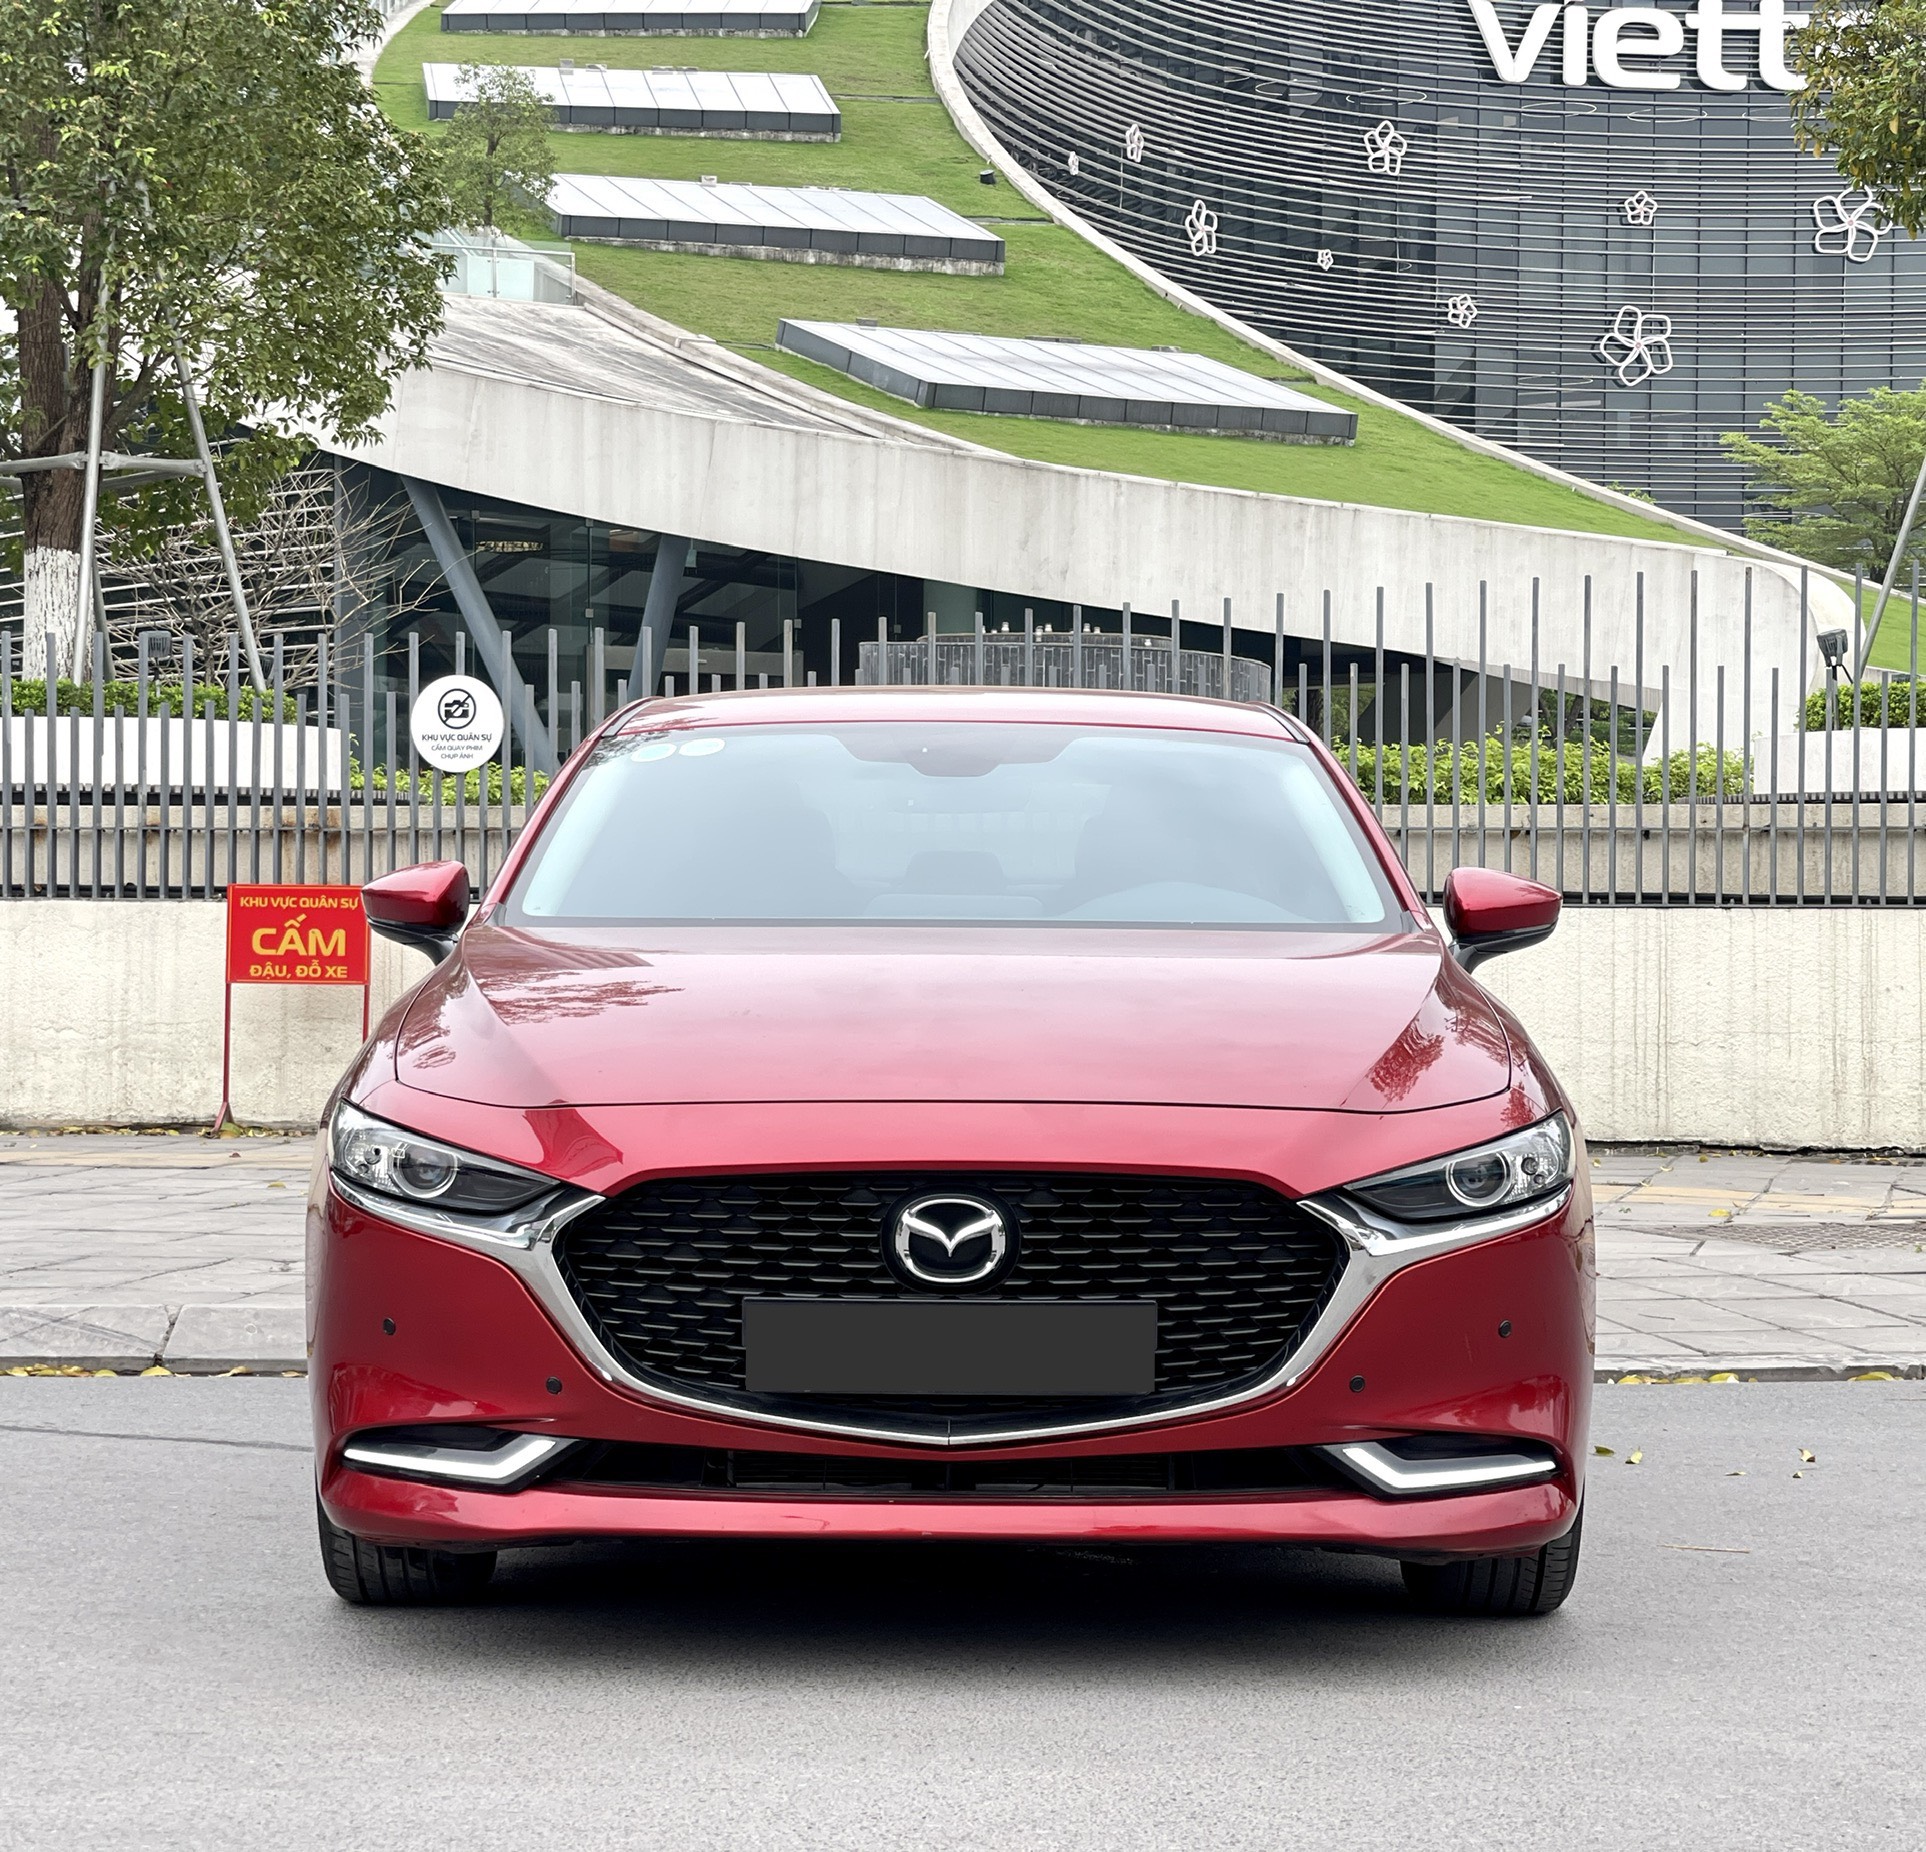 Chính chủ cần bán xe Mazda 3-1.5 luxury đỏ phale